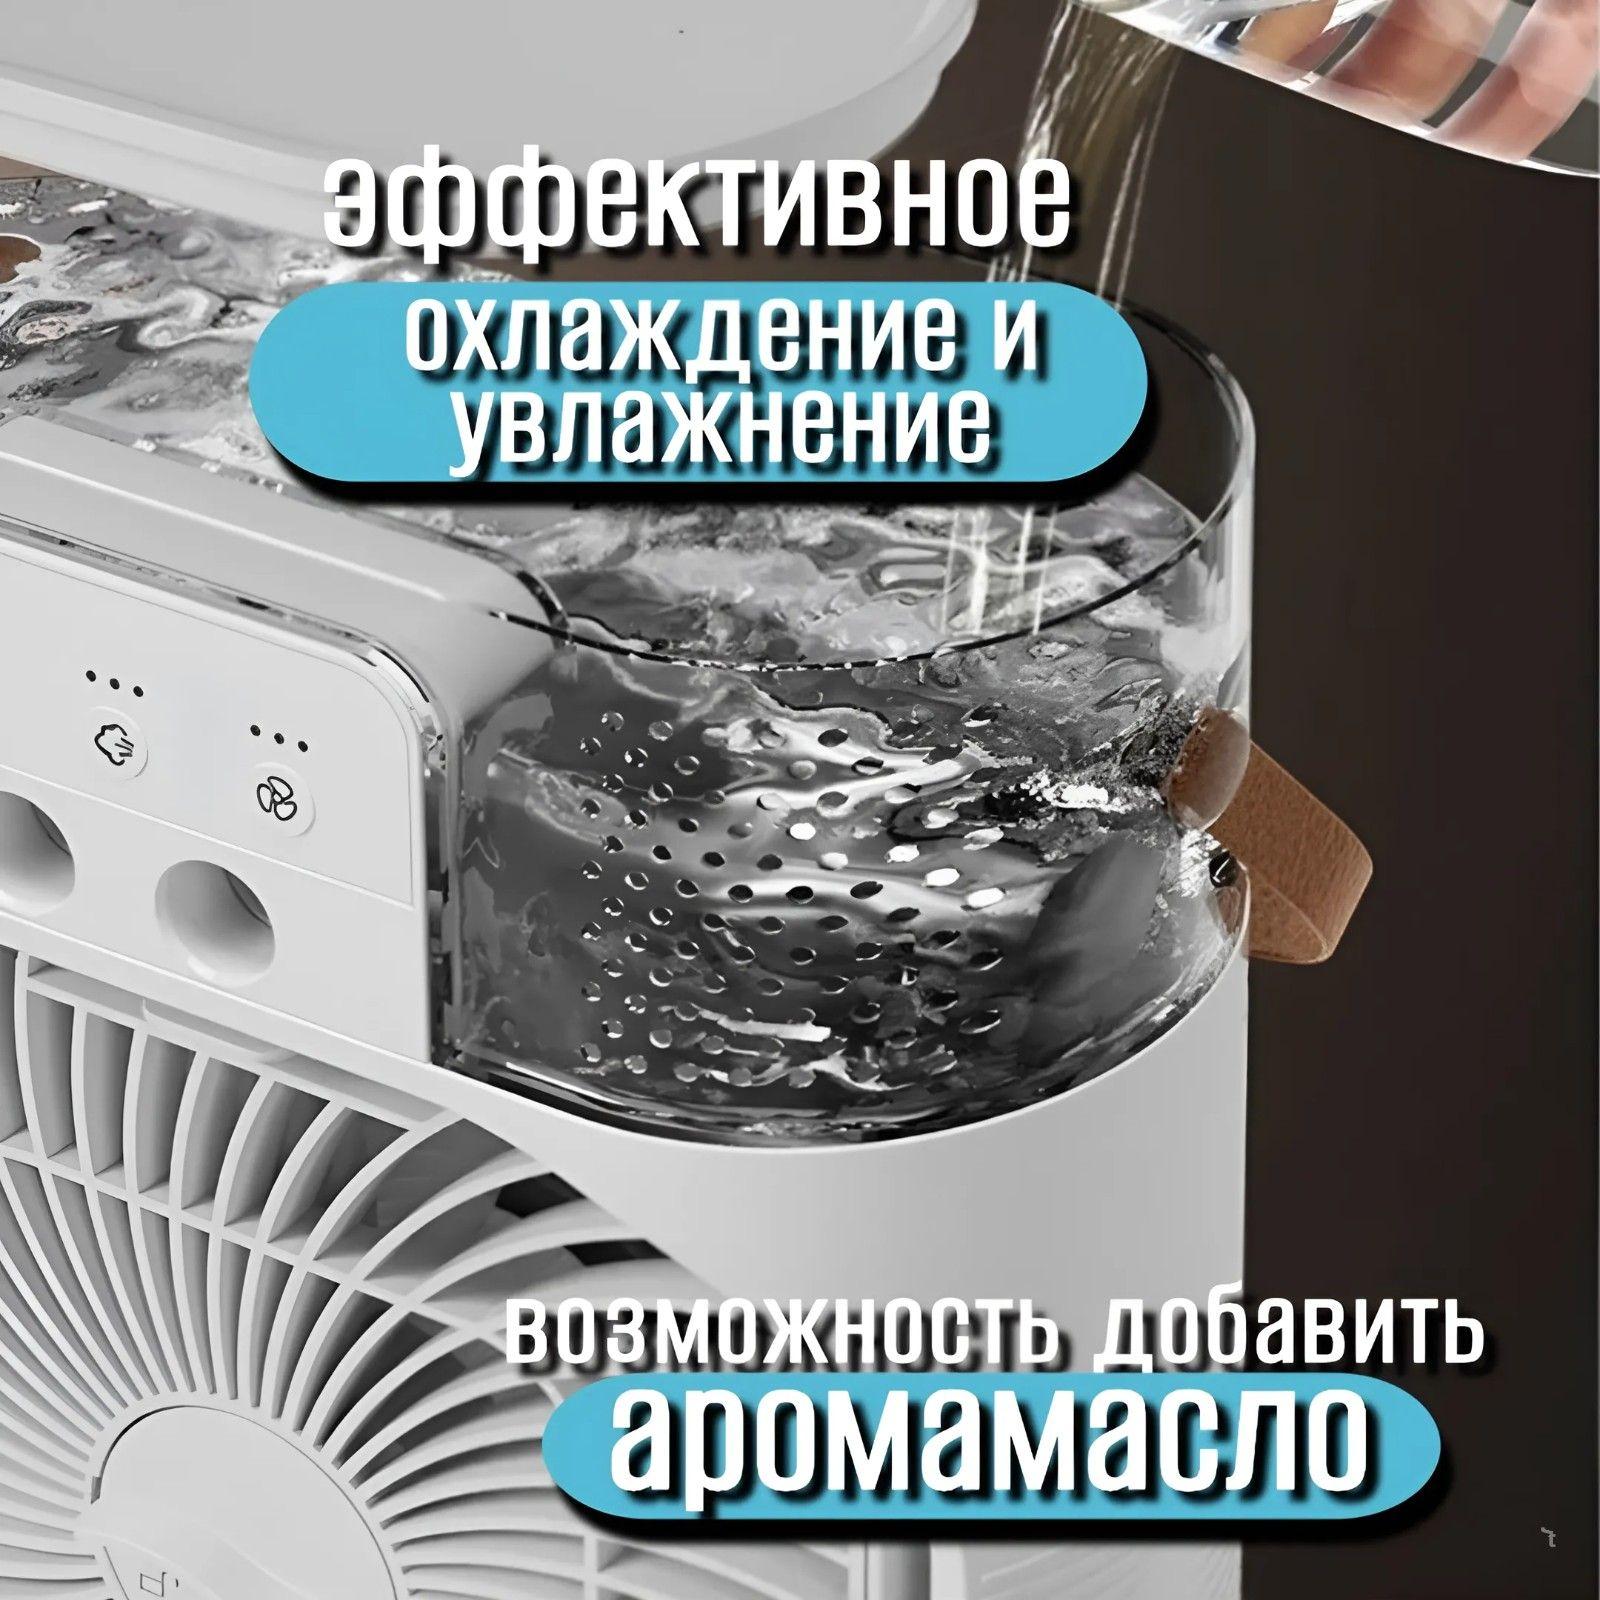 https://cdn1.ozone.ru/s3/multimedia-1-n/7038881159.jpg